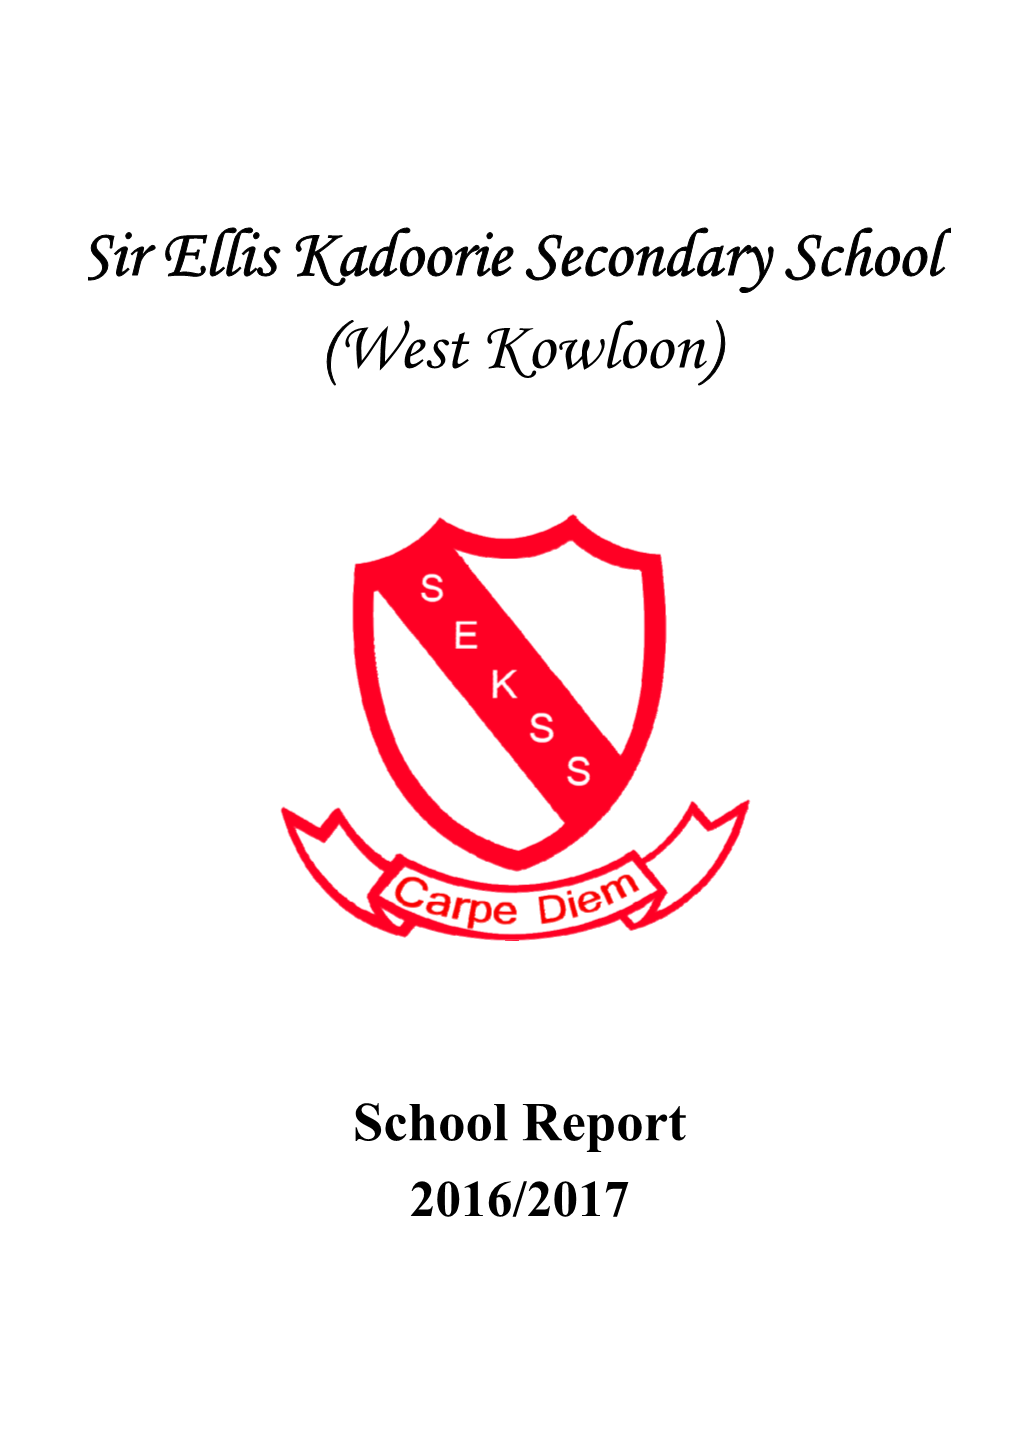 School Report 2016/2017